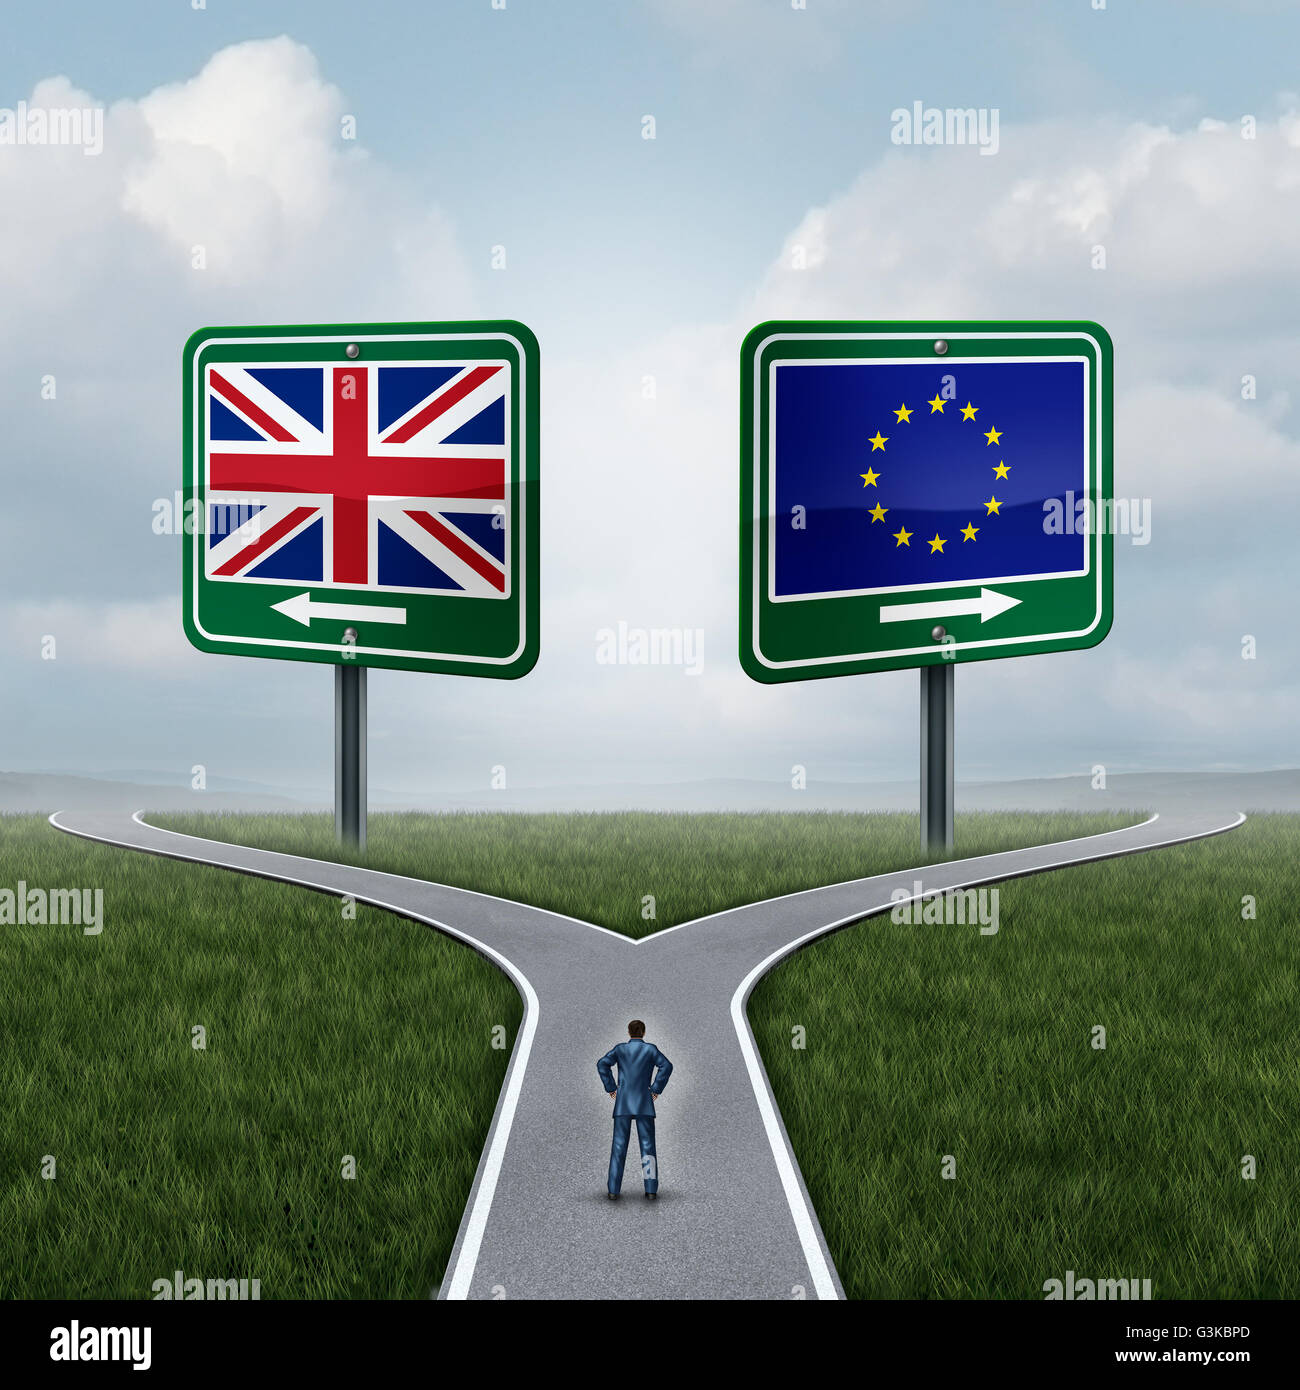 La Gran Bretagna Unione europea domanda come un concetto brexit appartenenti al Regno Unito voto confusione e della zona euro e in Europa adesione decisione britannica come di una persona in piedi su un incrocio dilemma con bandiere sui cartelli stradali con 3D'illustrazione degli elementi. Foto Stock